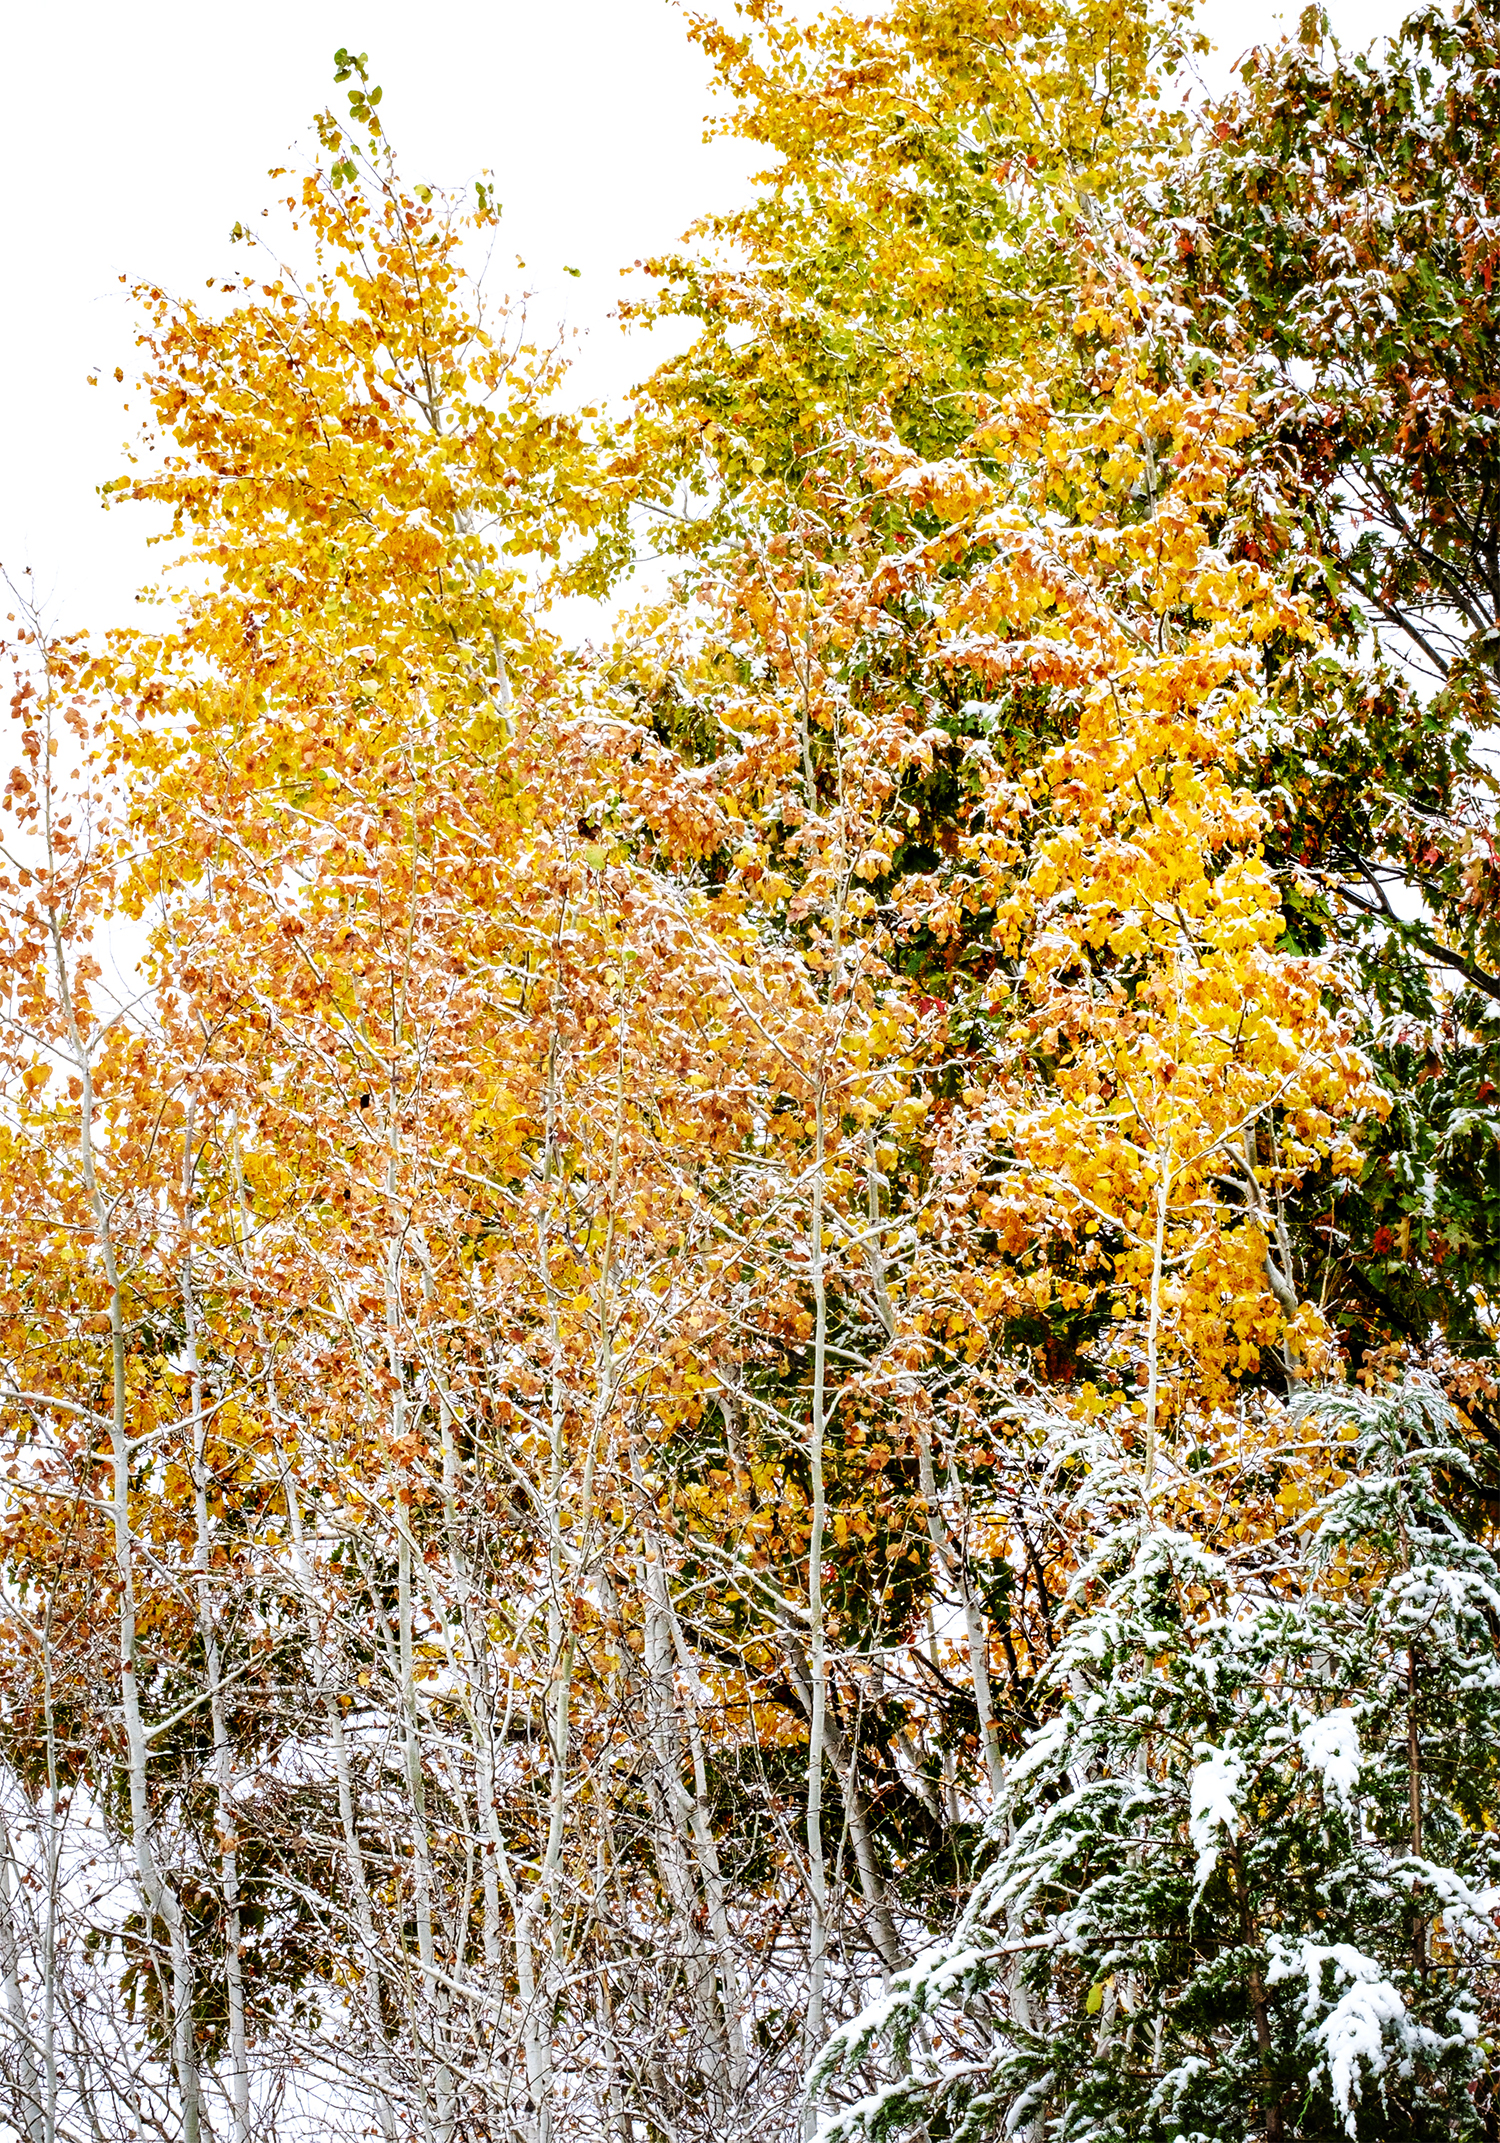 October snow at Black Elk- Neihardt Park